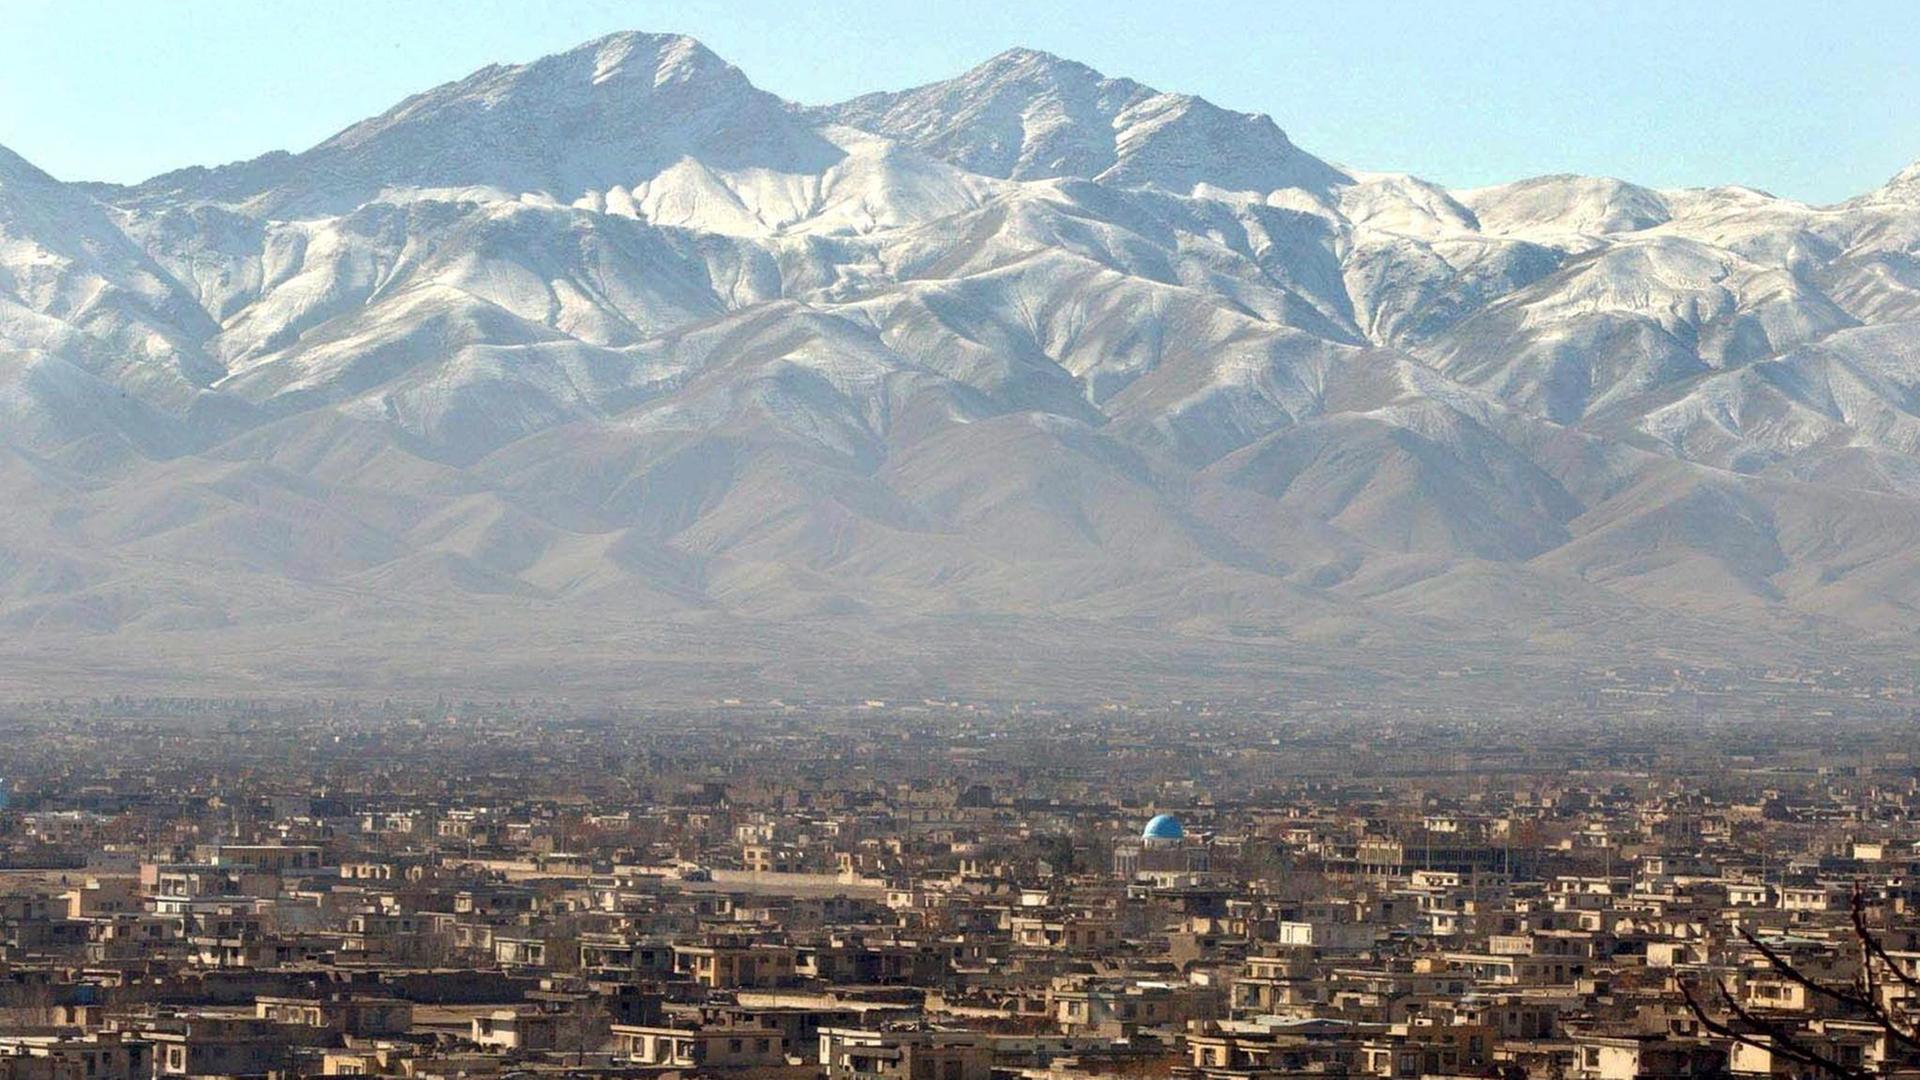 Kabul am Morgen des 17. Januar 2002. Im Hintergrund des Panoramas sind schneebedeckte Berge zu sehen.